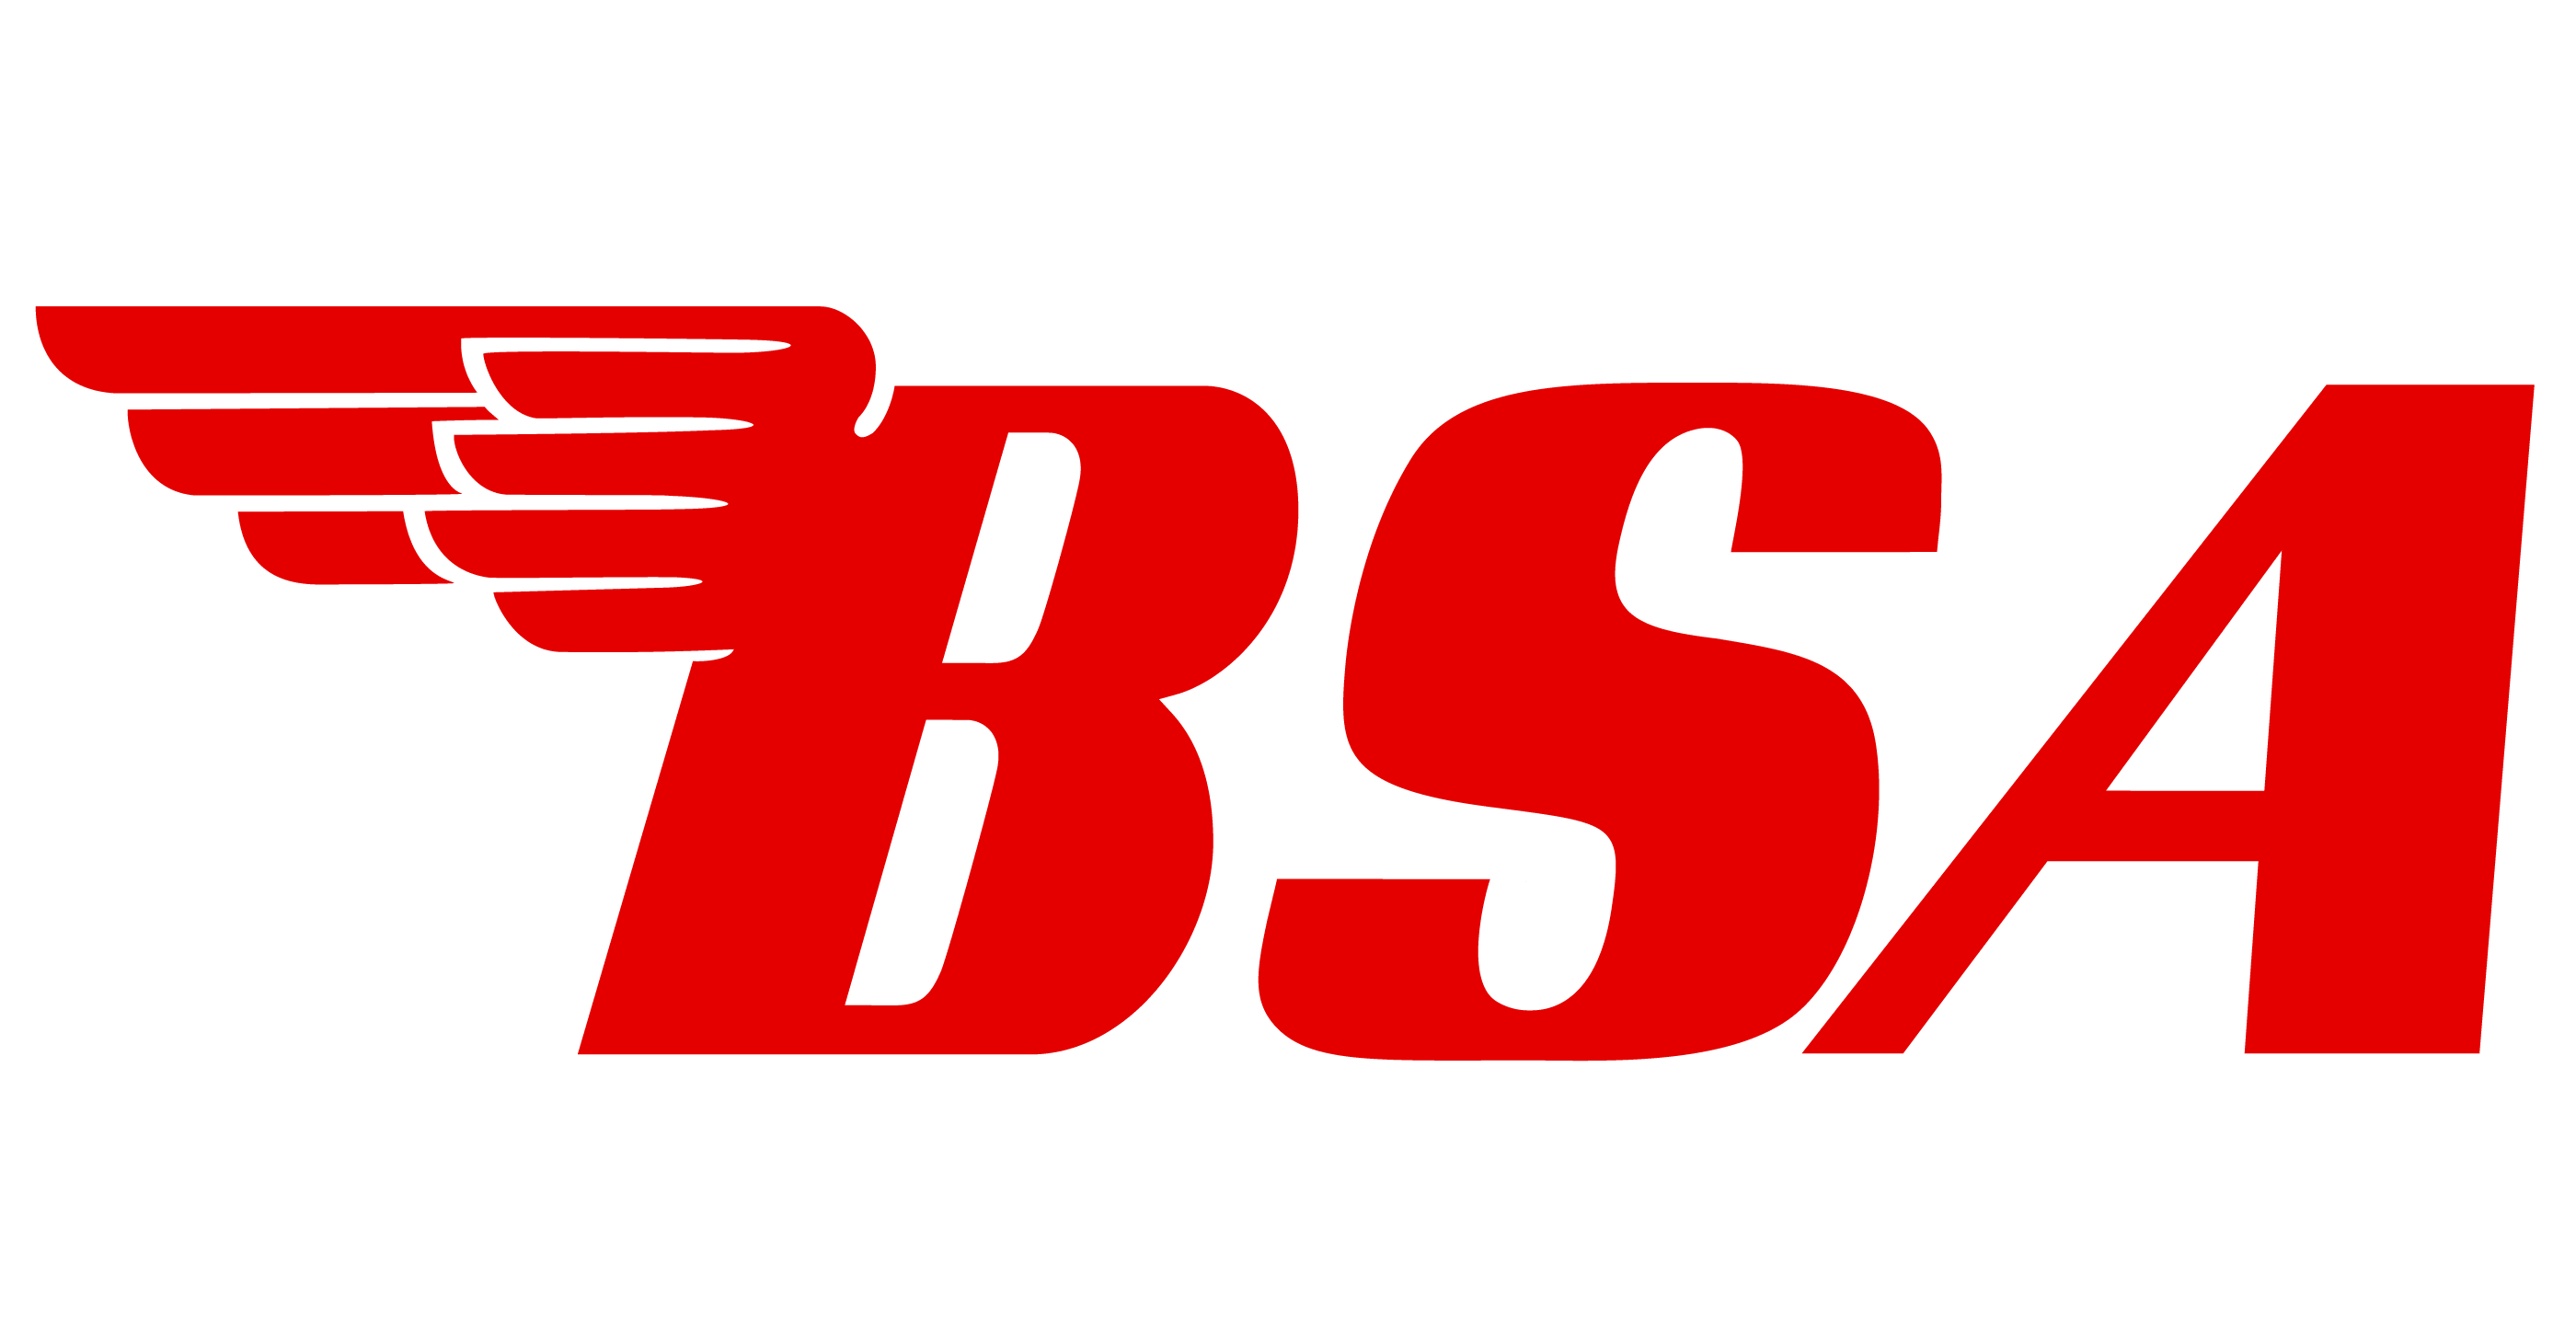 B.S.a Logo - BSA Logo Motorcycle. Motorcycle Logos. Motorcycle logo, Bike logo